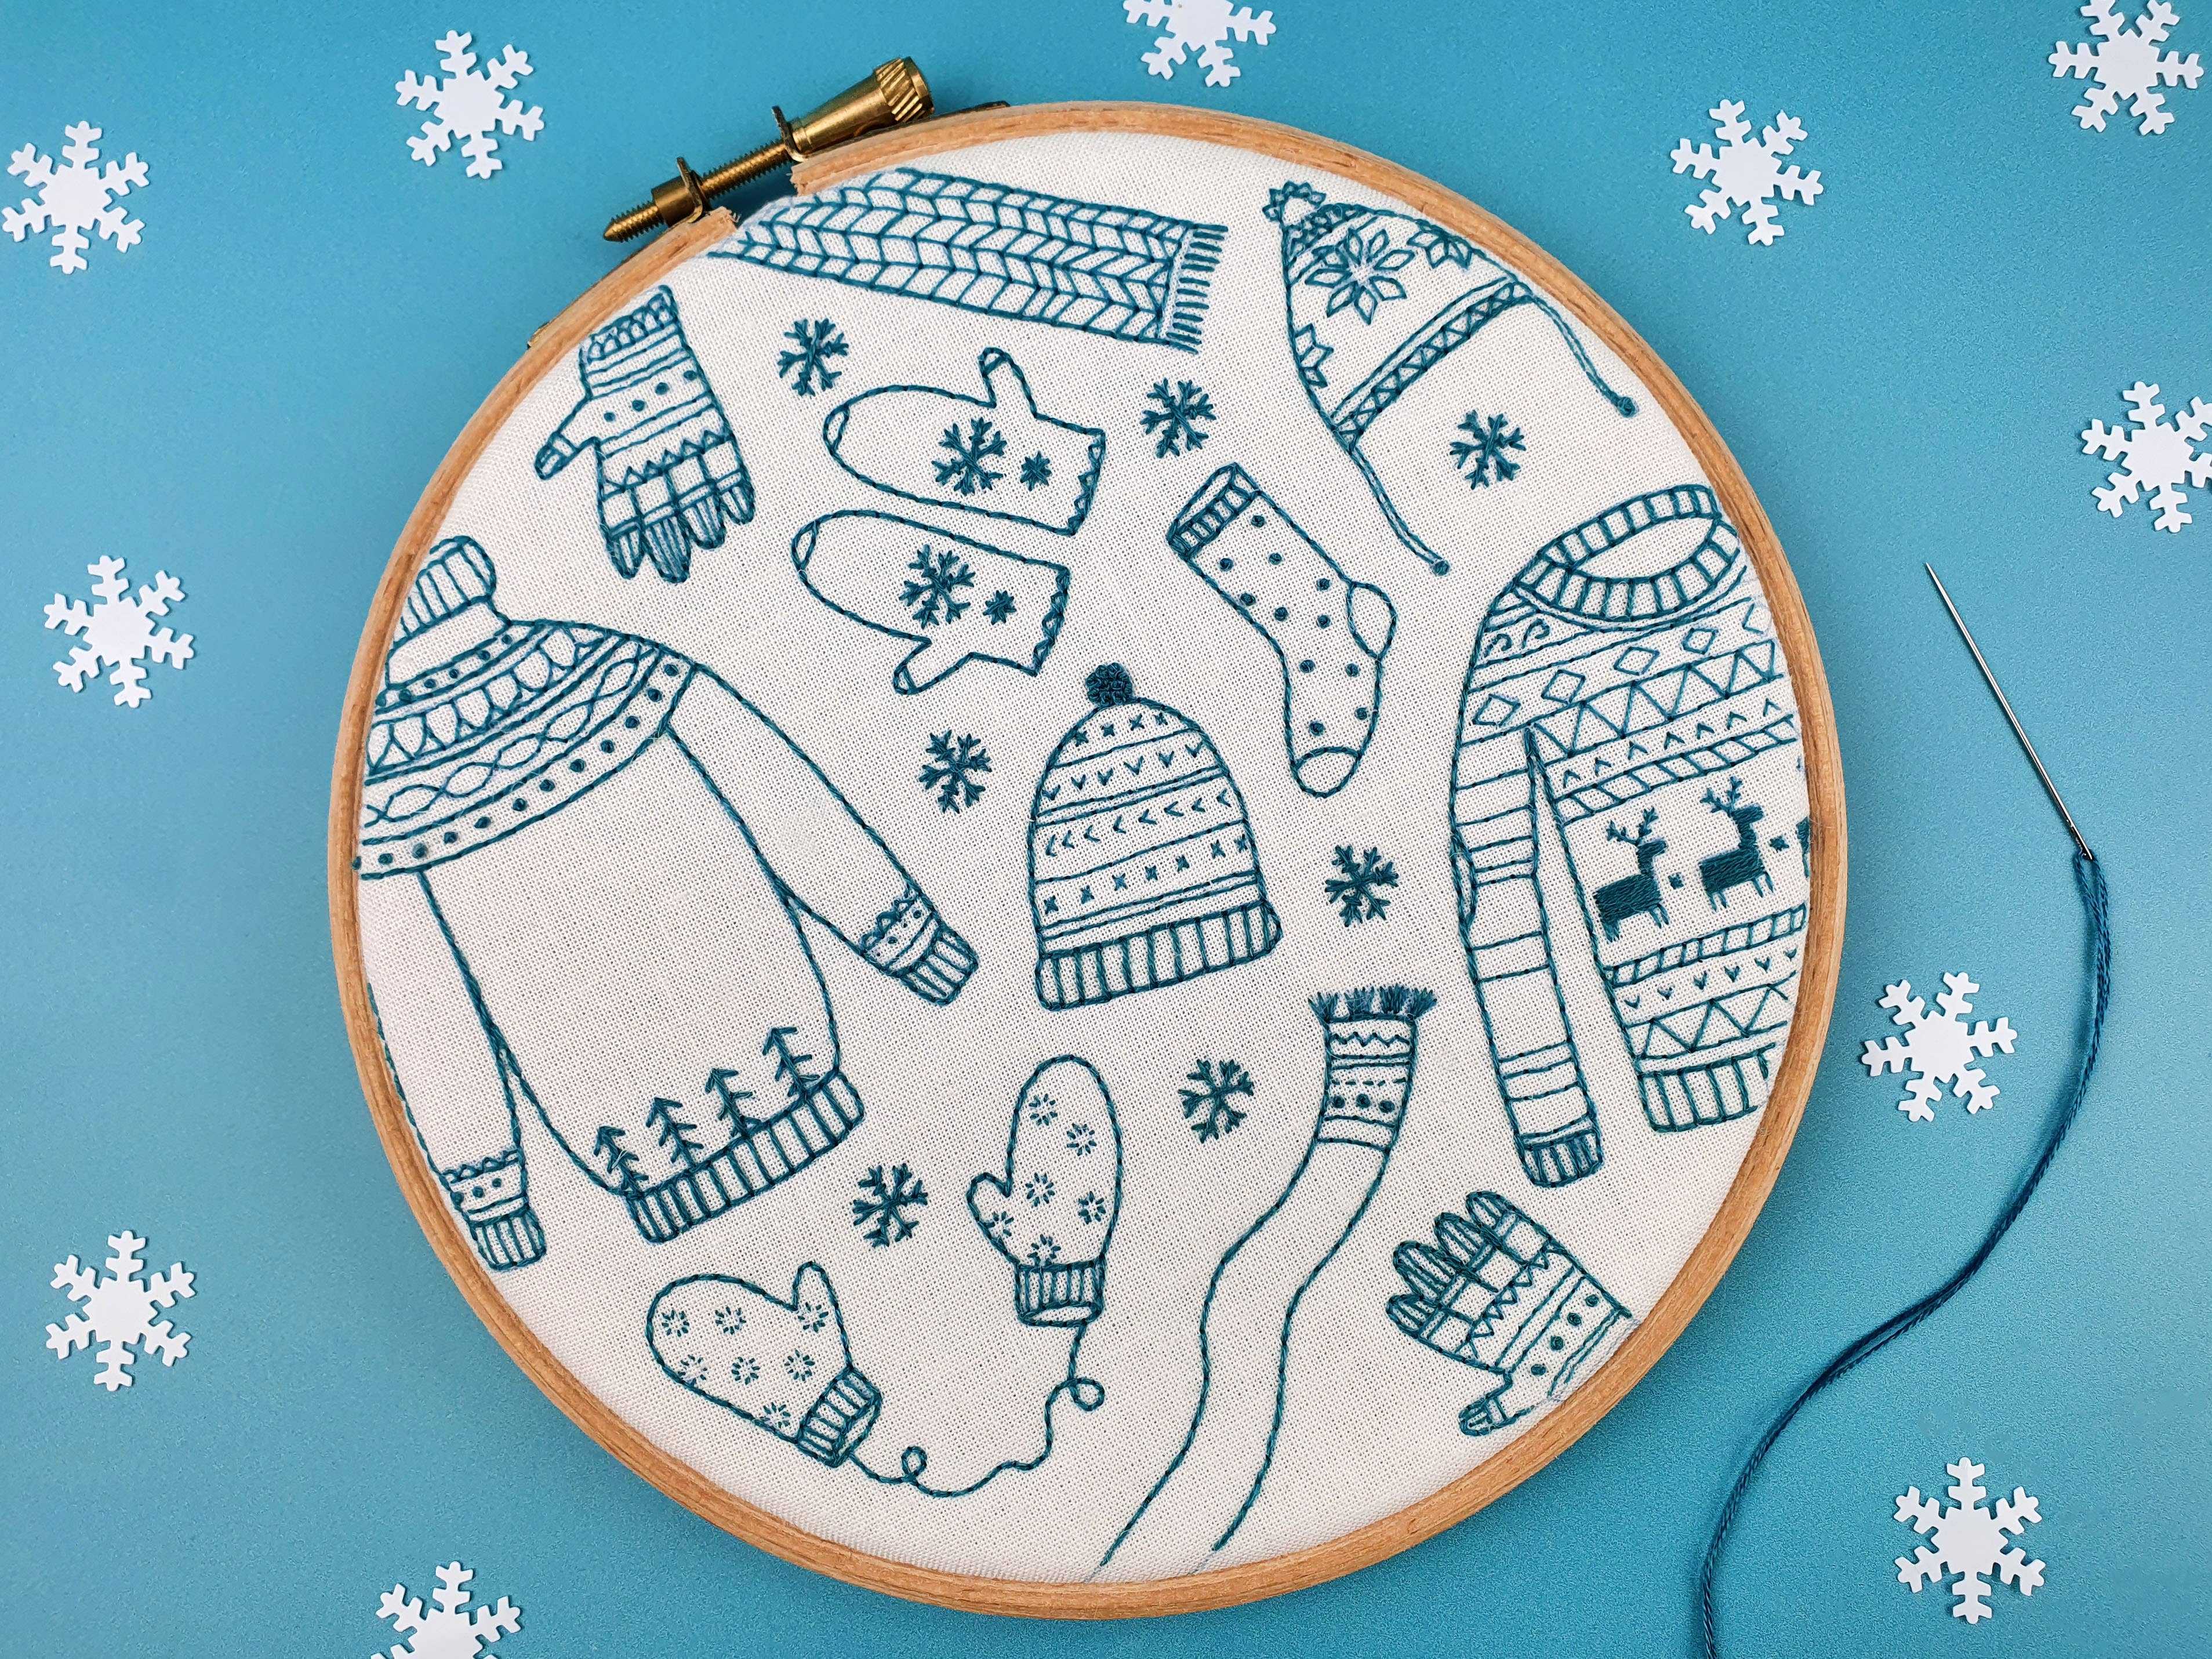 Winter Woolies Christmas Handmade Embroidery Kit Hoop Art